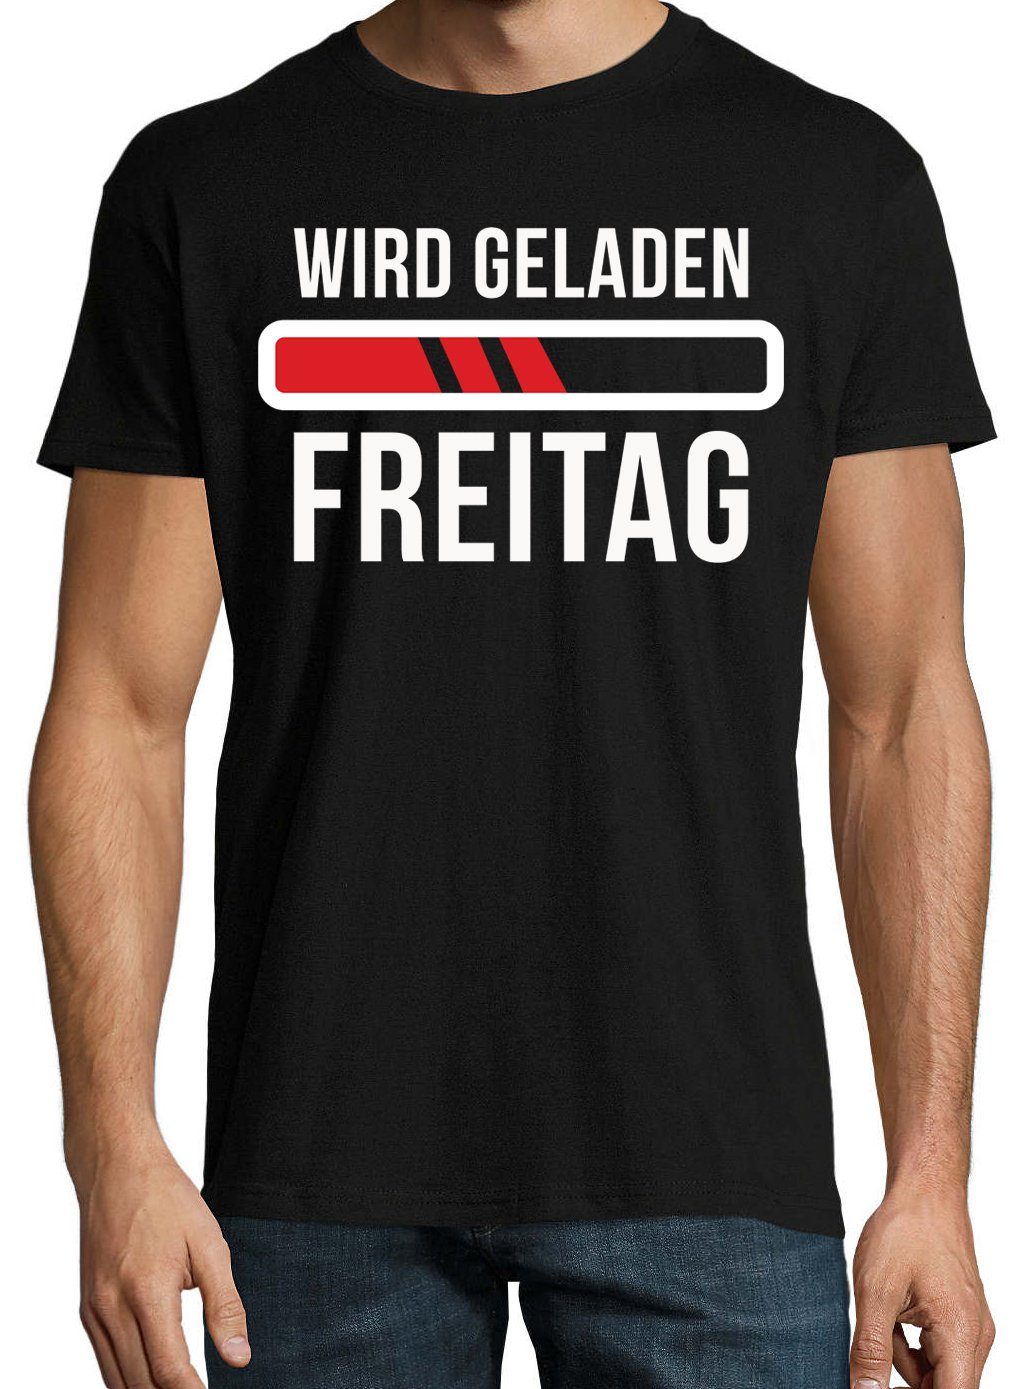 Herren geladen, T-Shirt Print Designz mit Freitag" Schwarz T-Shirt Youth "Wird lustigem